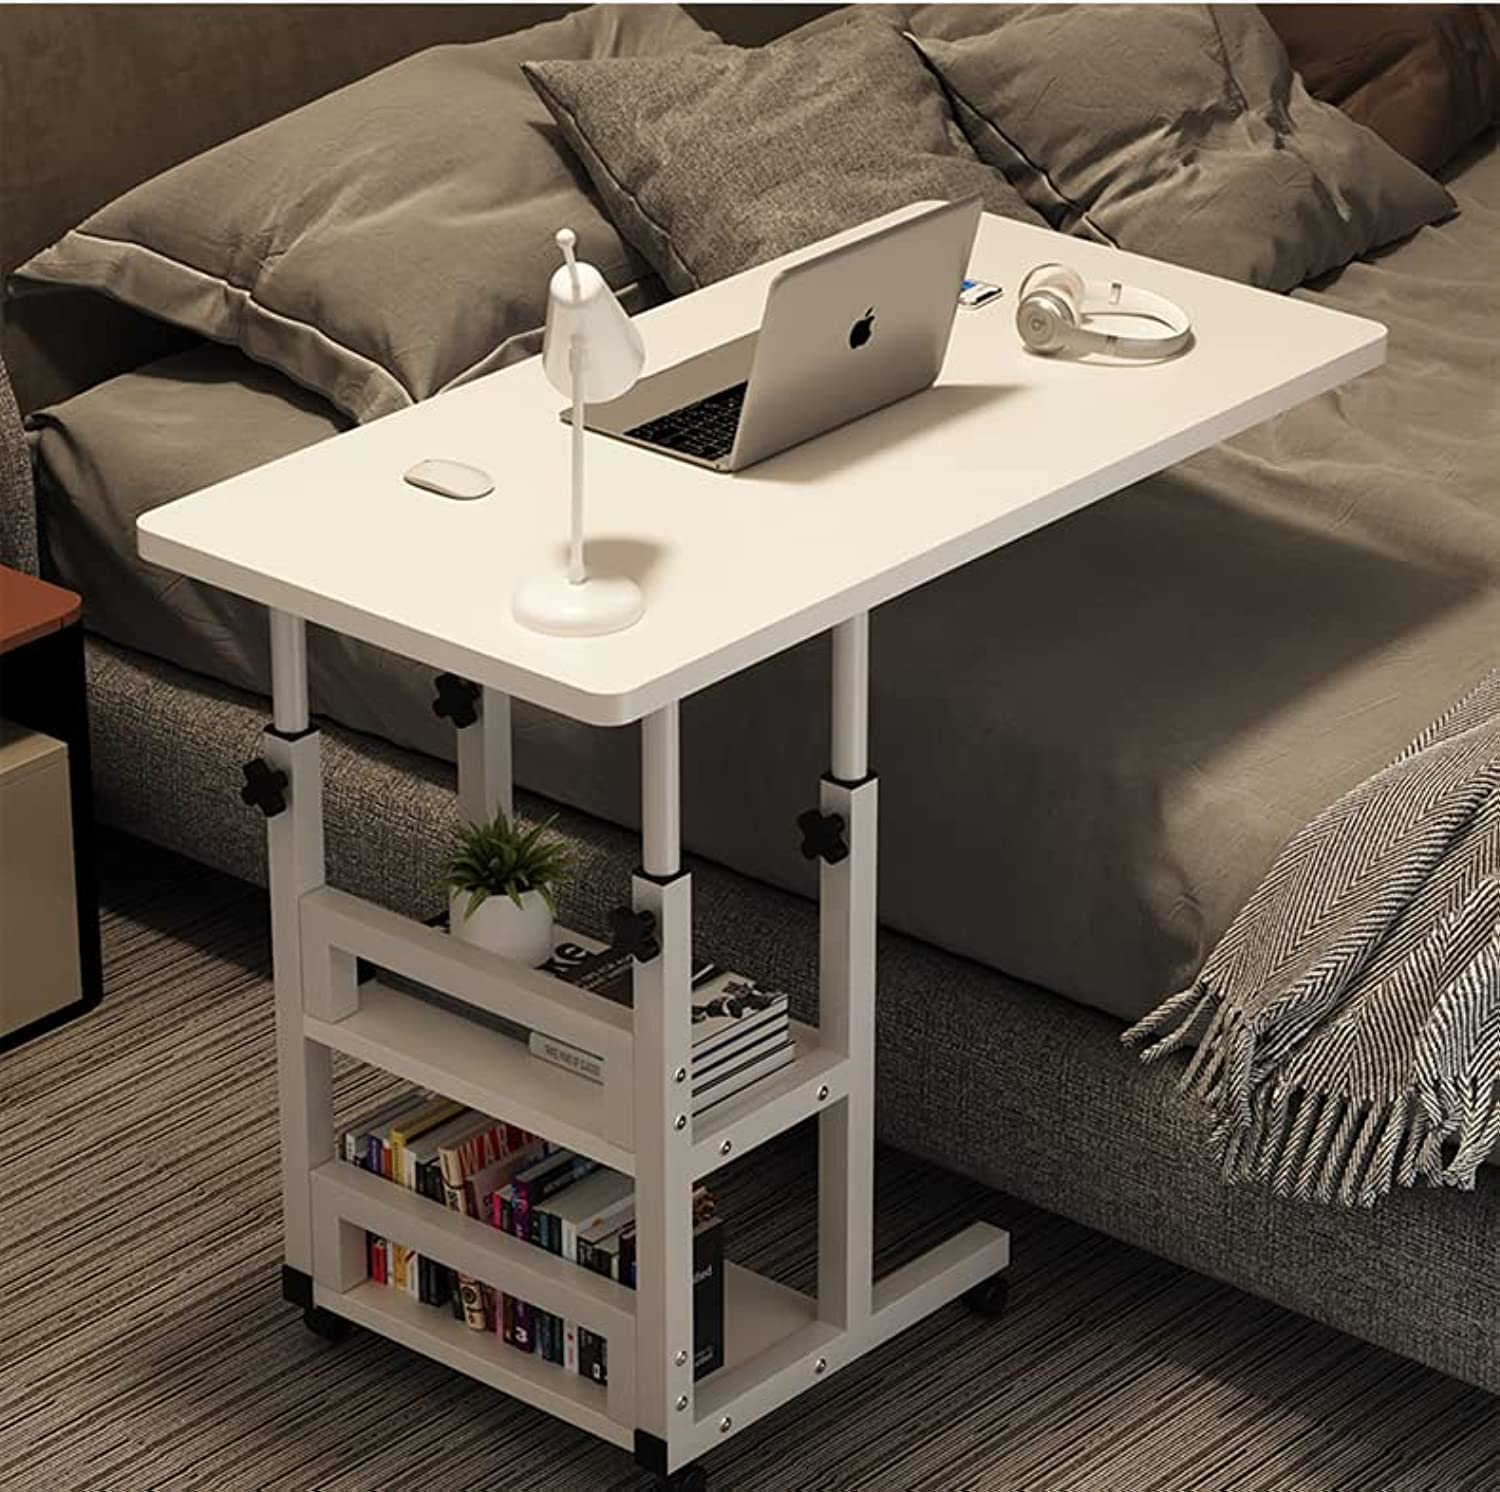 میز قابل تنظیم لب تاب مدل Adjustable Standing Desk - ارسال 10 الی 15 روز کاری